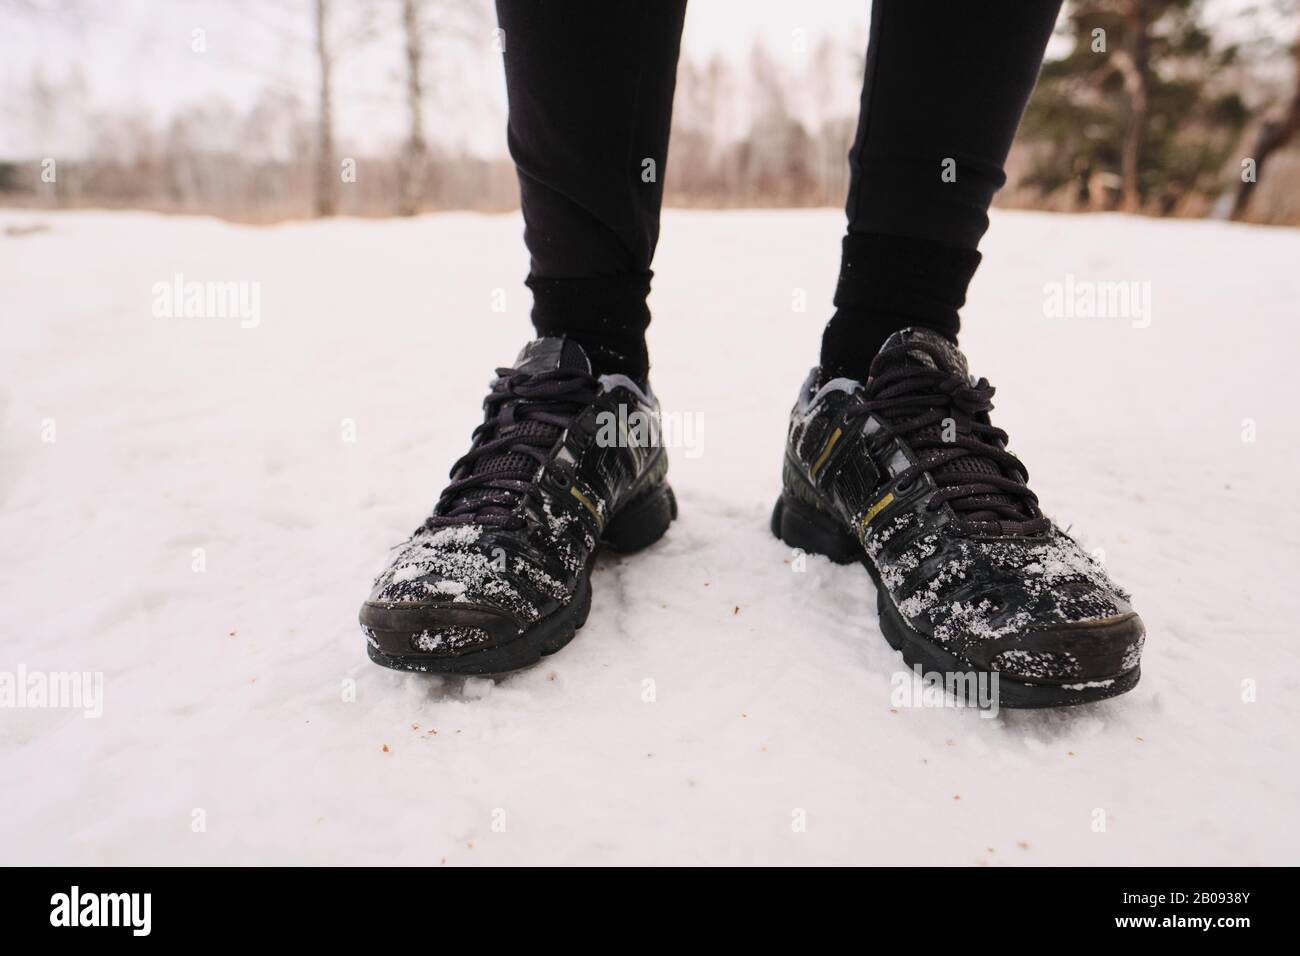 Primer plano de la persona irreconocible en invierno zapatos deportivos negros de pie sobre la nieve Foto de stock